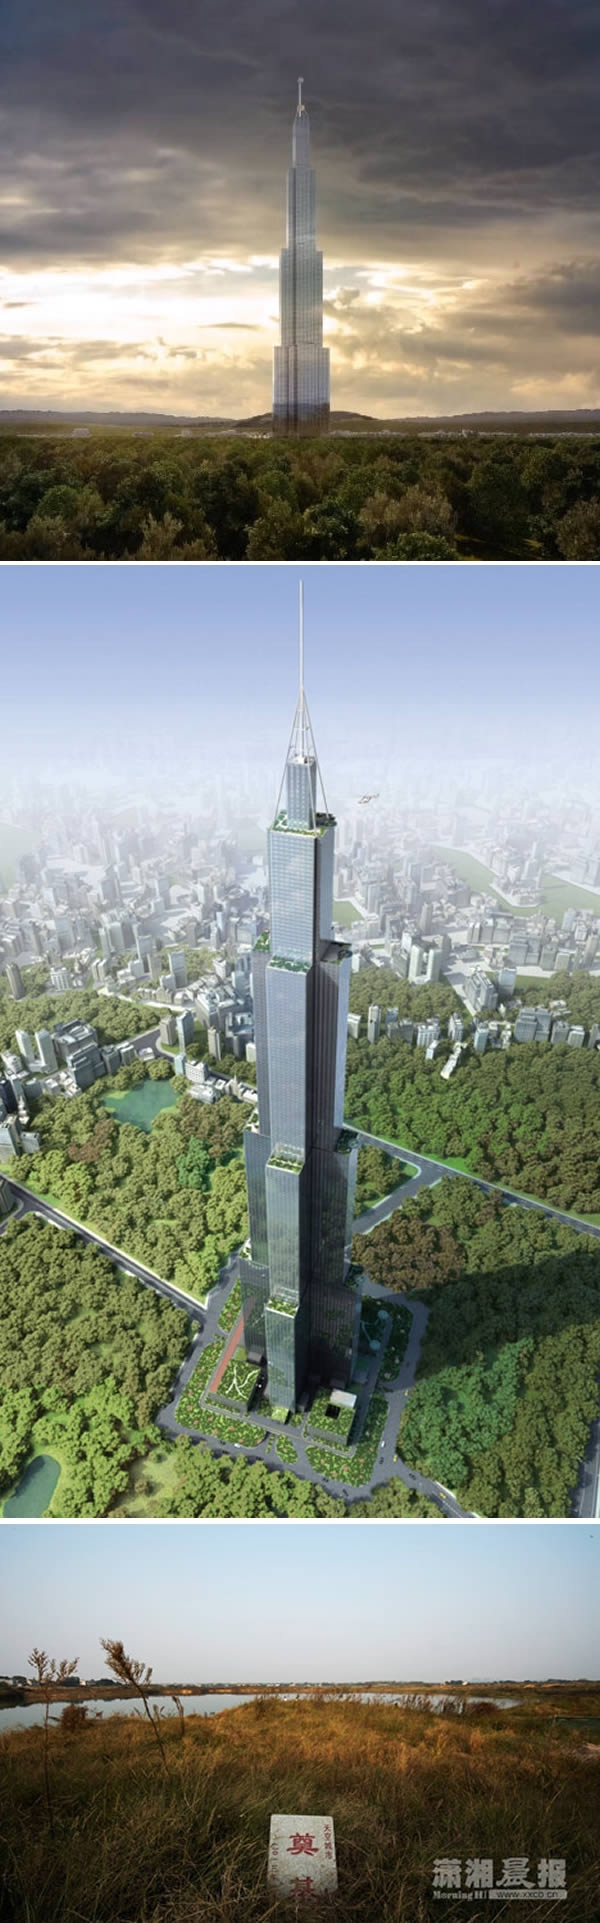 Năm 2013, BSB - một công ty con của Tập đoàn Broad, Trung Quốc – đã lên kế hoạch xây dựng tòa nhà chọc trời 838 mét trong thời gian kỉ lục 90 ngày tại Changsha. Nhưng sau khi hoàn thành được phần móng, nó đã không thể tiếp tục xây và được người dân dùng làm... chỗ nuôi cá. (Ảnh: Oddee)